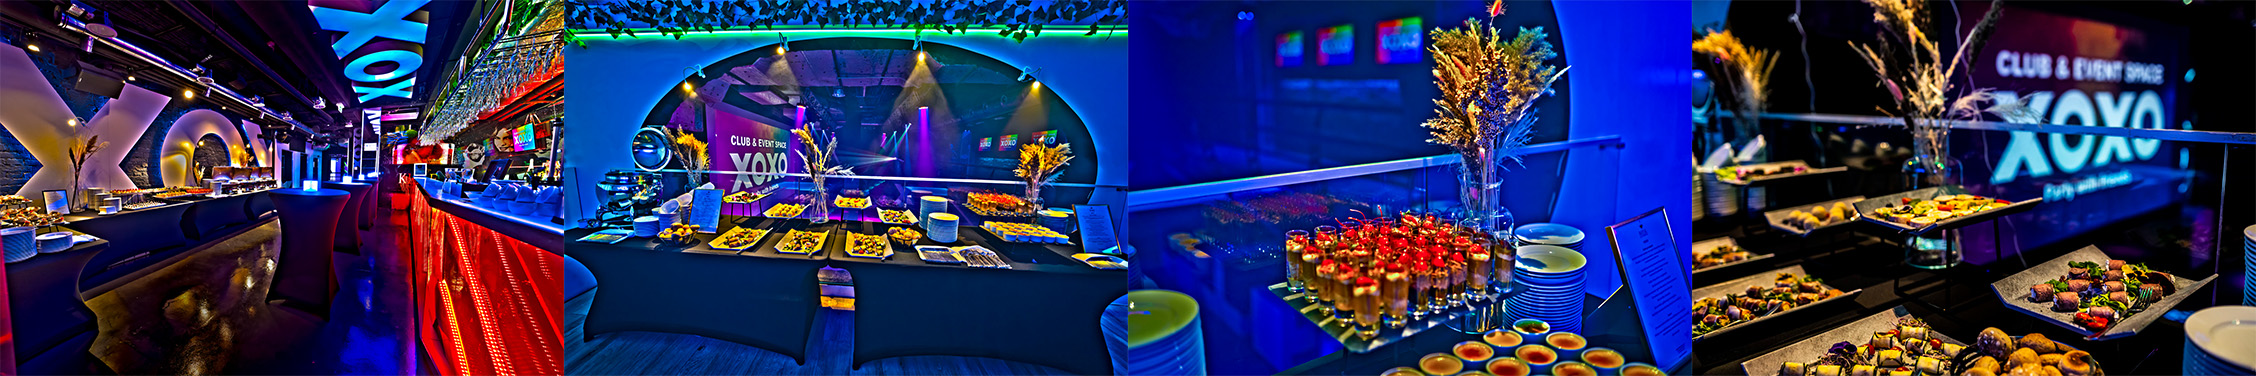 Catering i menu na eventy dla firm w klubie XOXO Party 